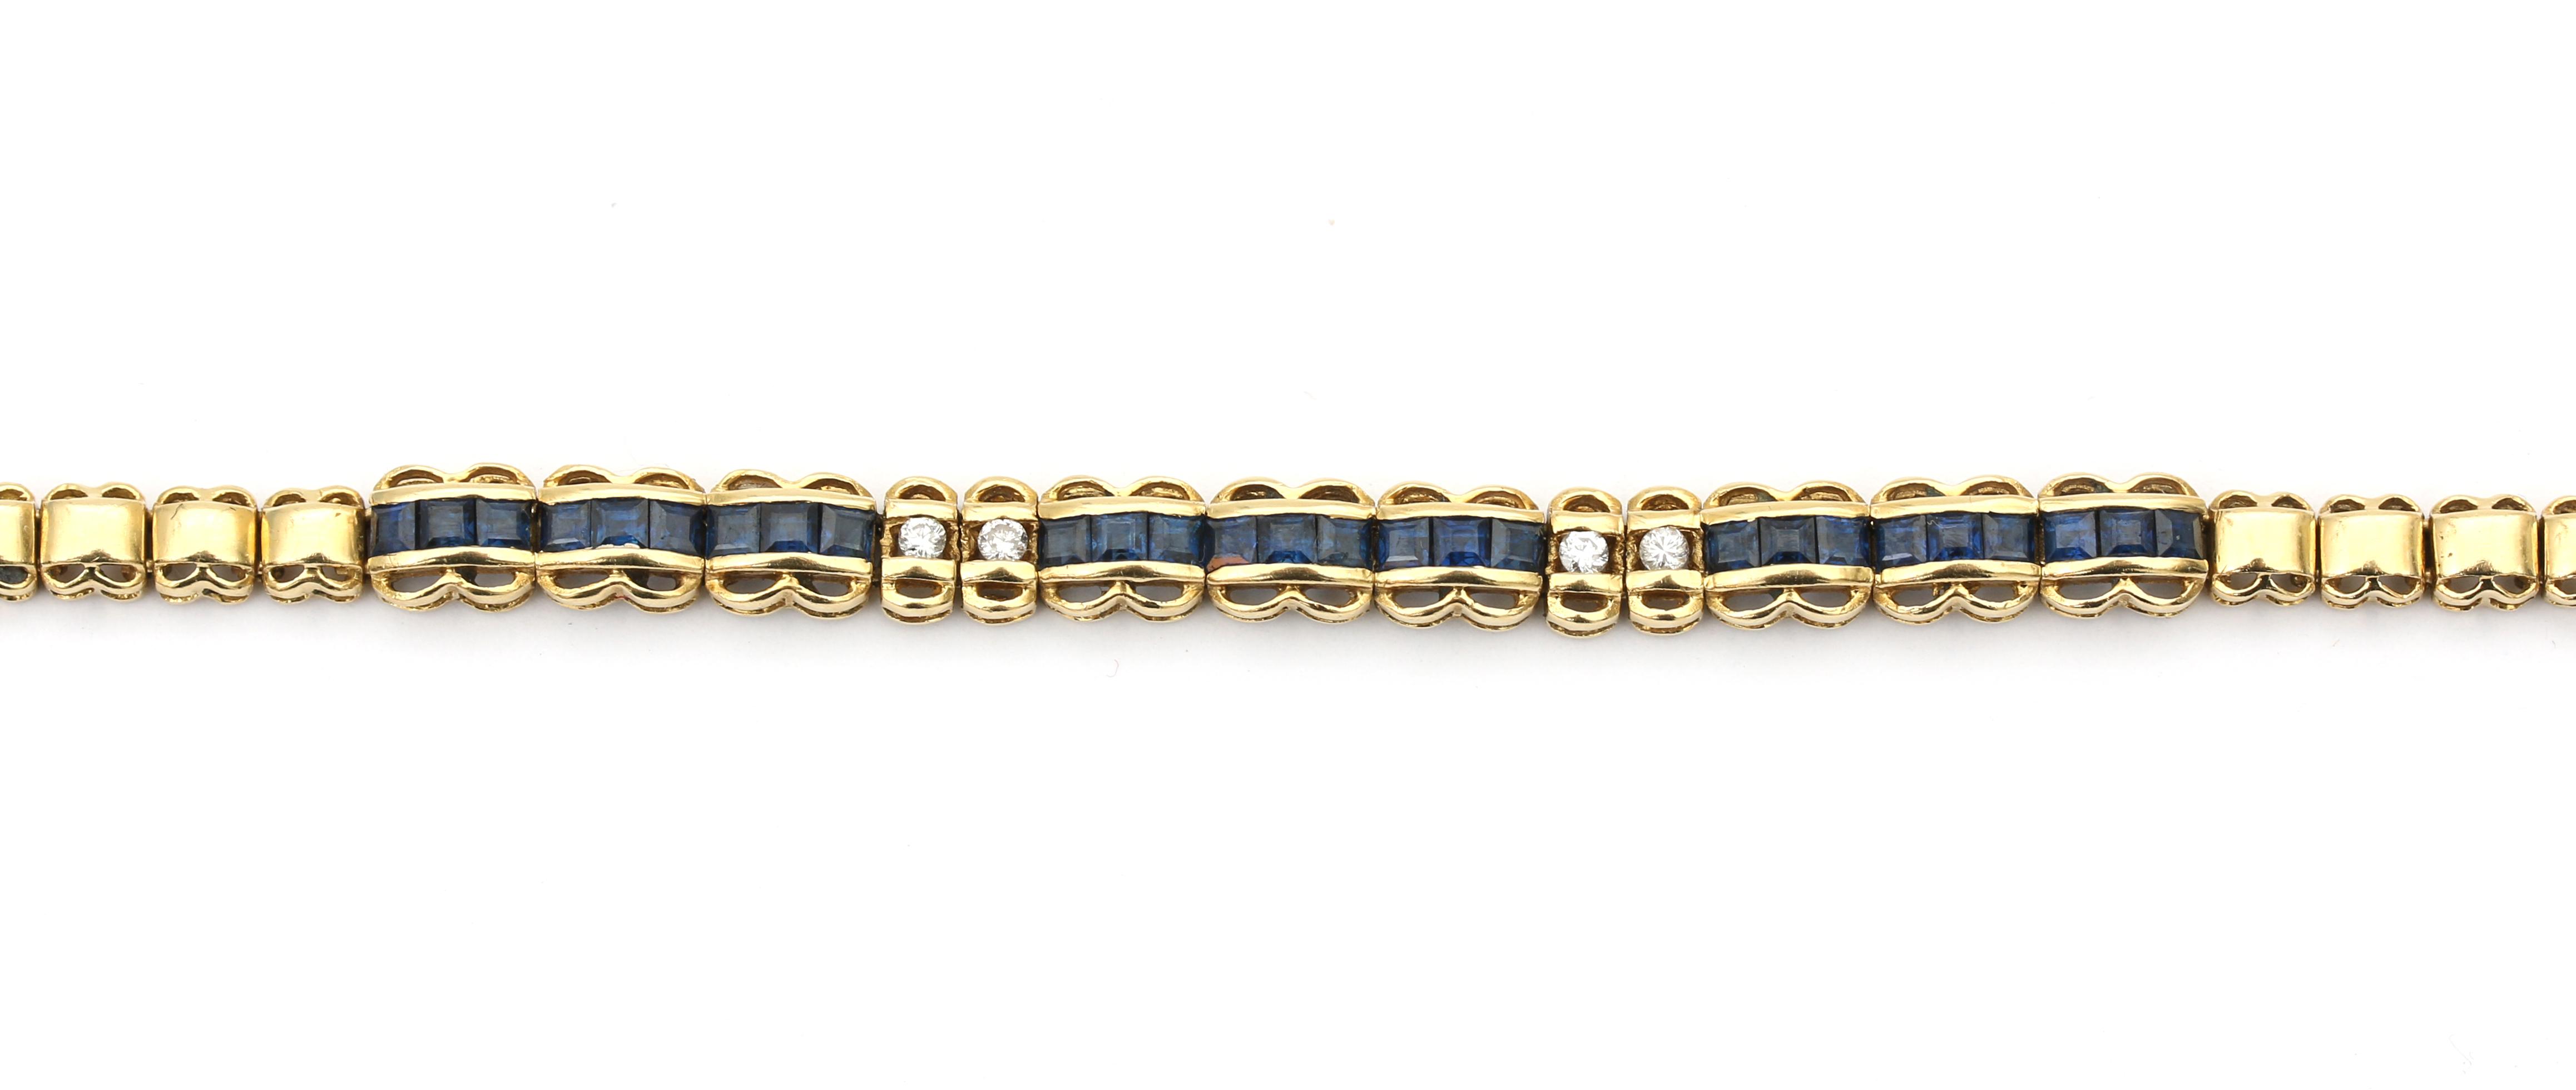 An 18 karat gold sapphire and diamond bracelet